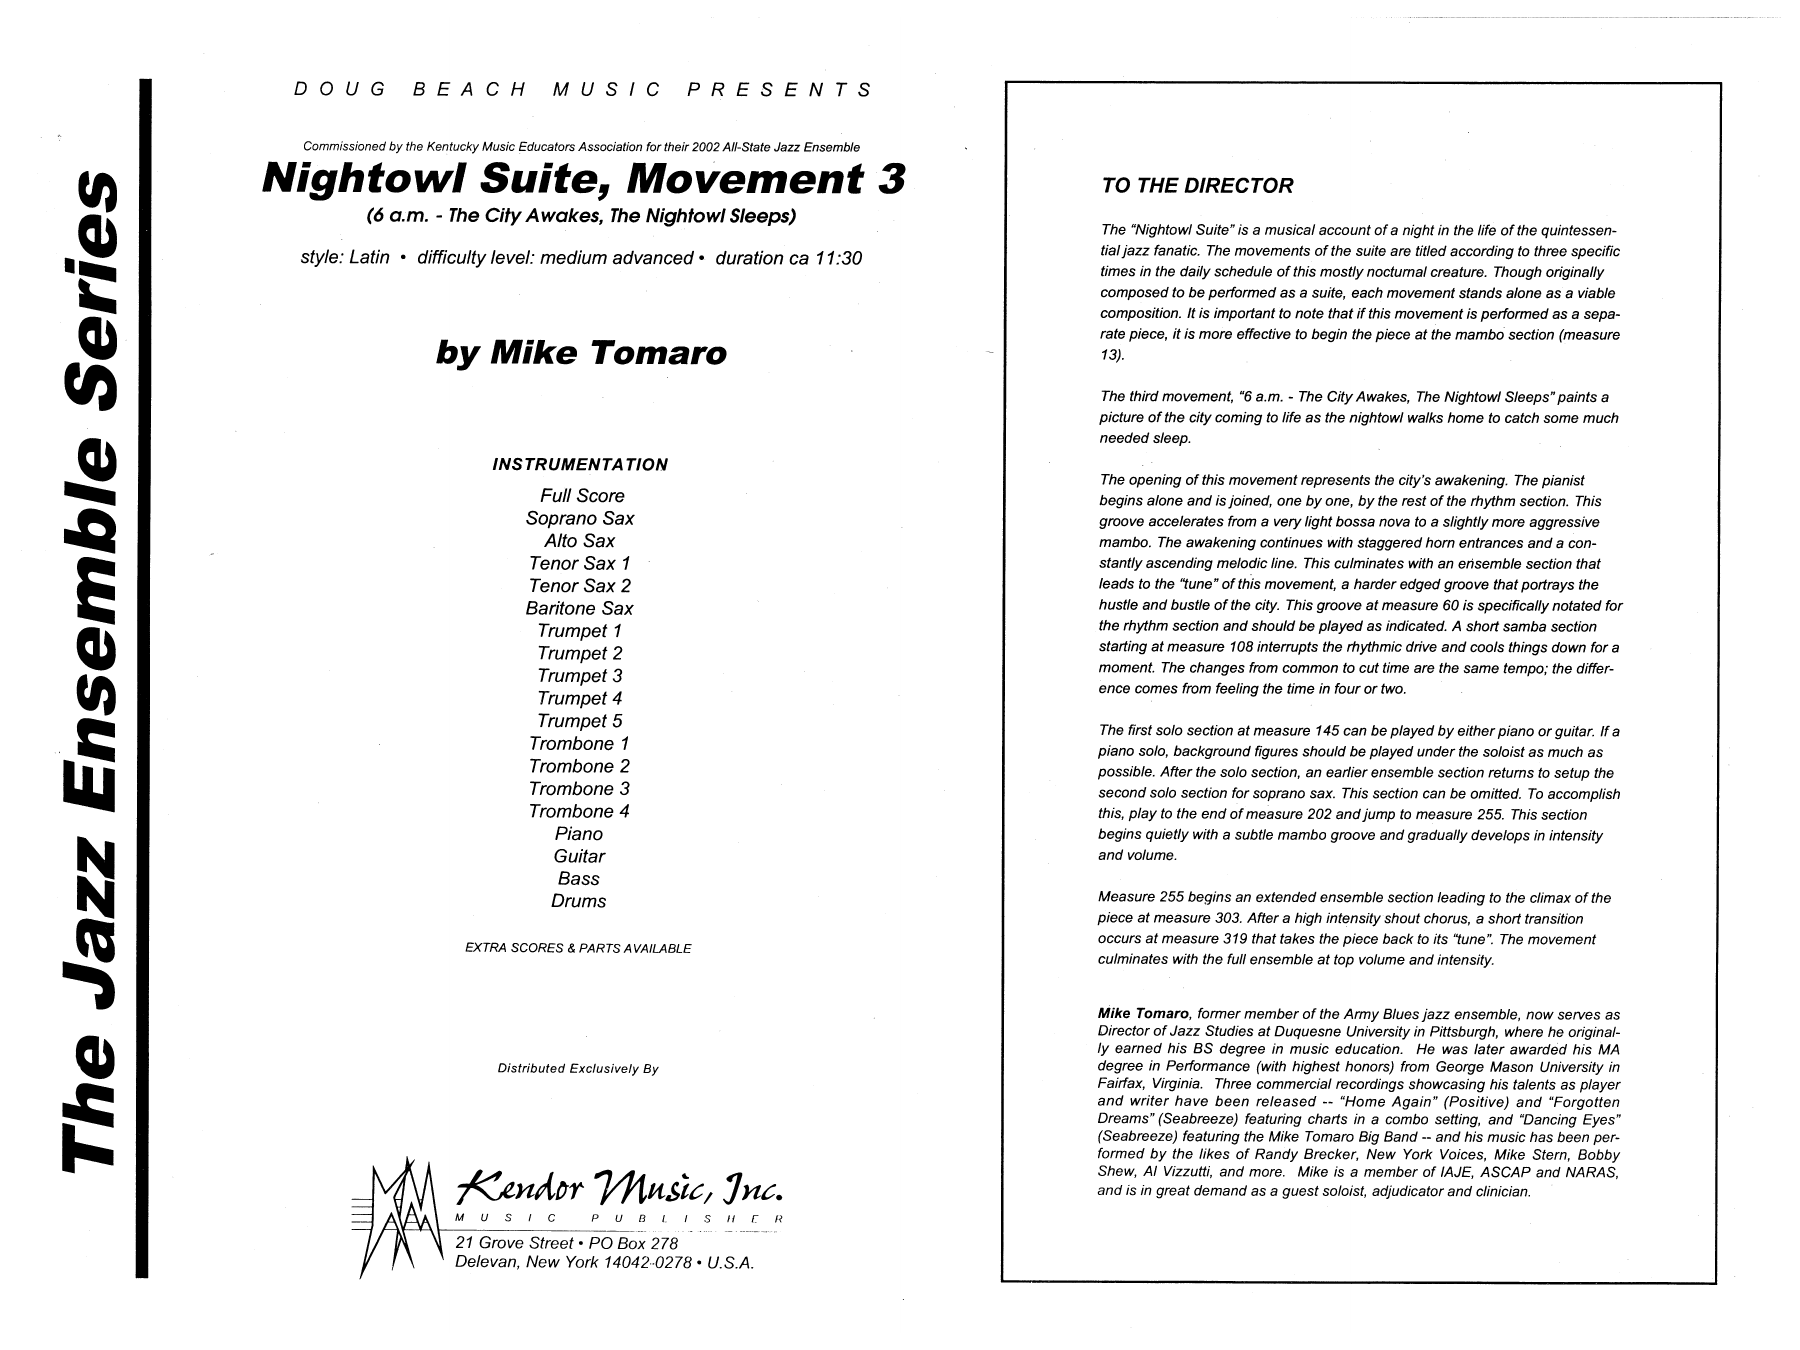 Download Mike Tomaro Nightowl Suite, Mvt. 3 - Full Score Sheet Music